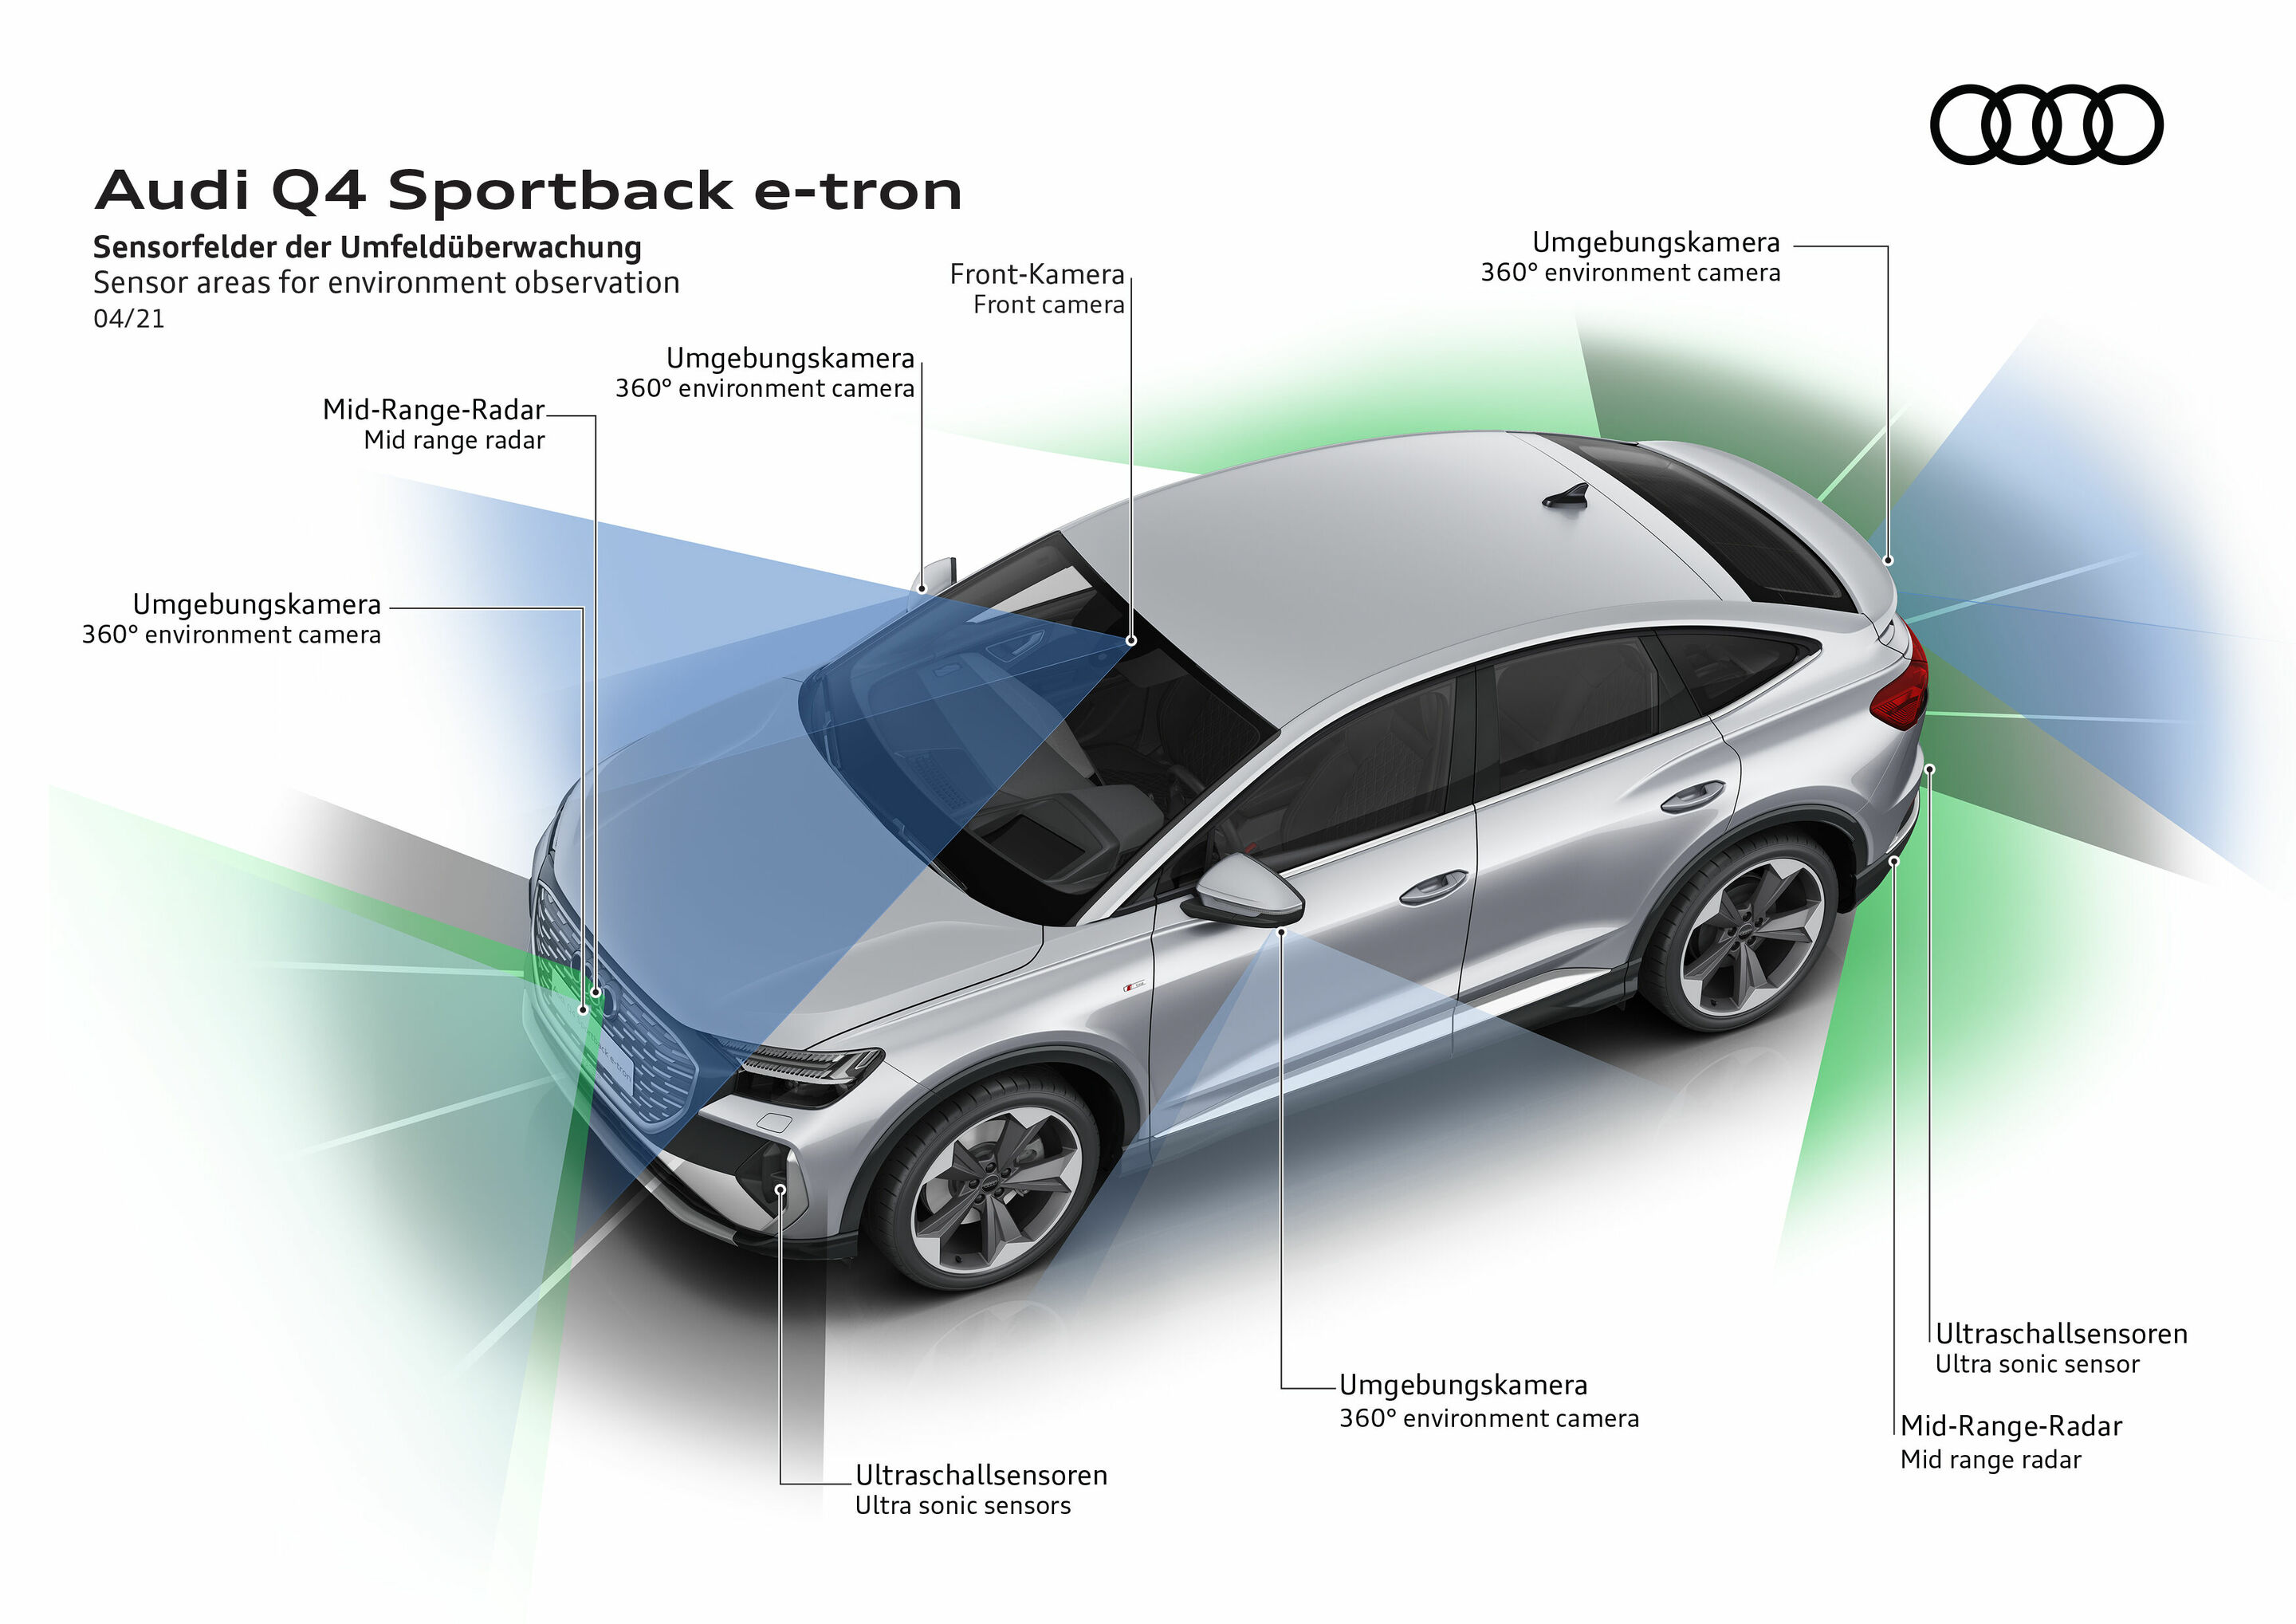 Audi Q4 e-tron 360 degree cameras 